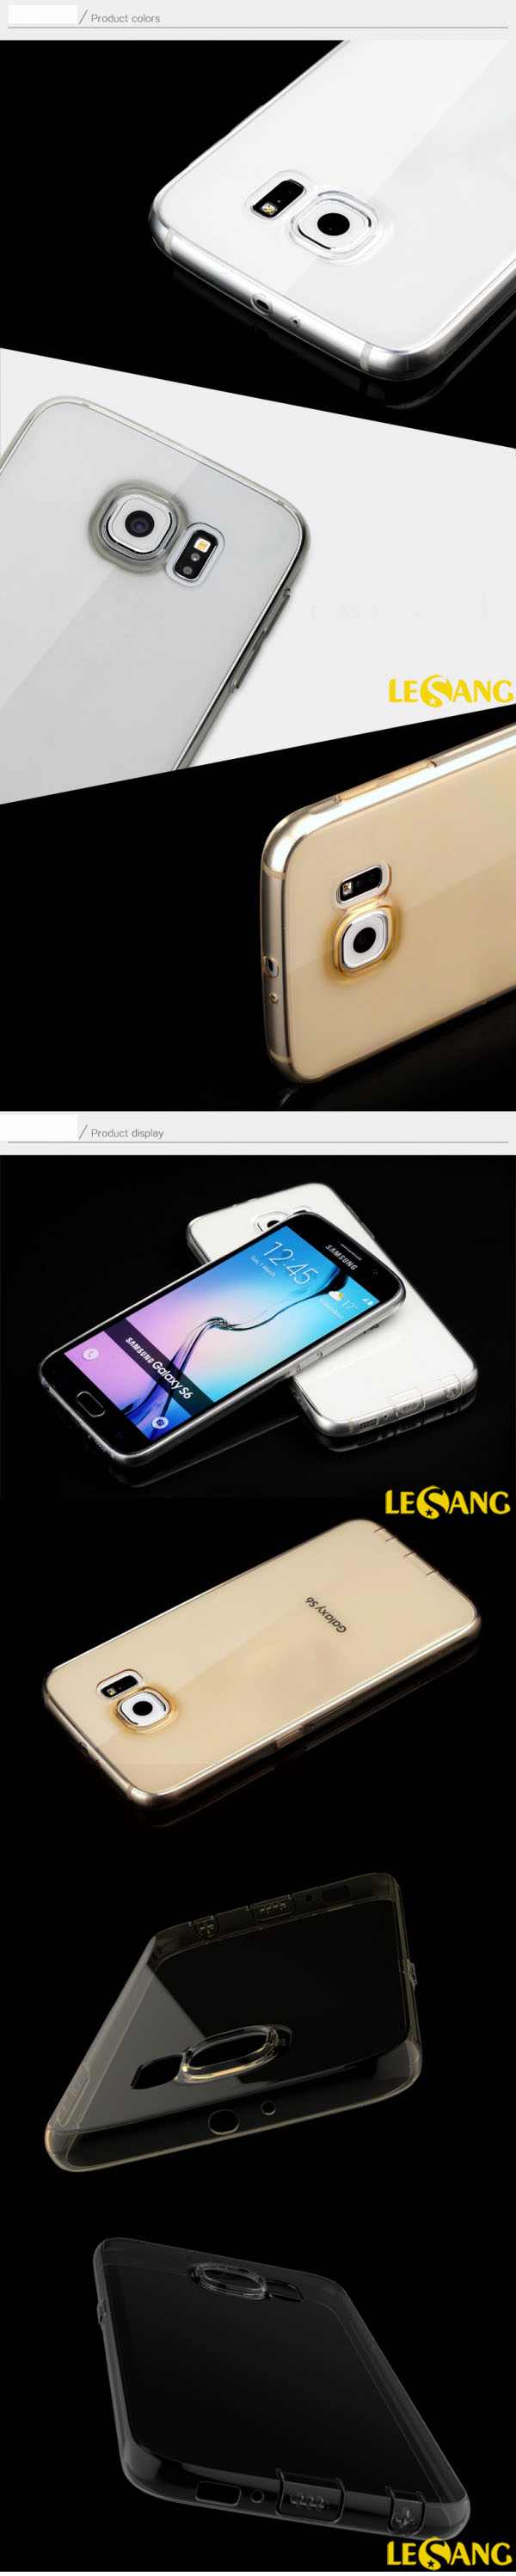 Ốp lưng Galaxy S6 Rock TPU nhựa dẻo trong suốt 3265